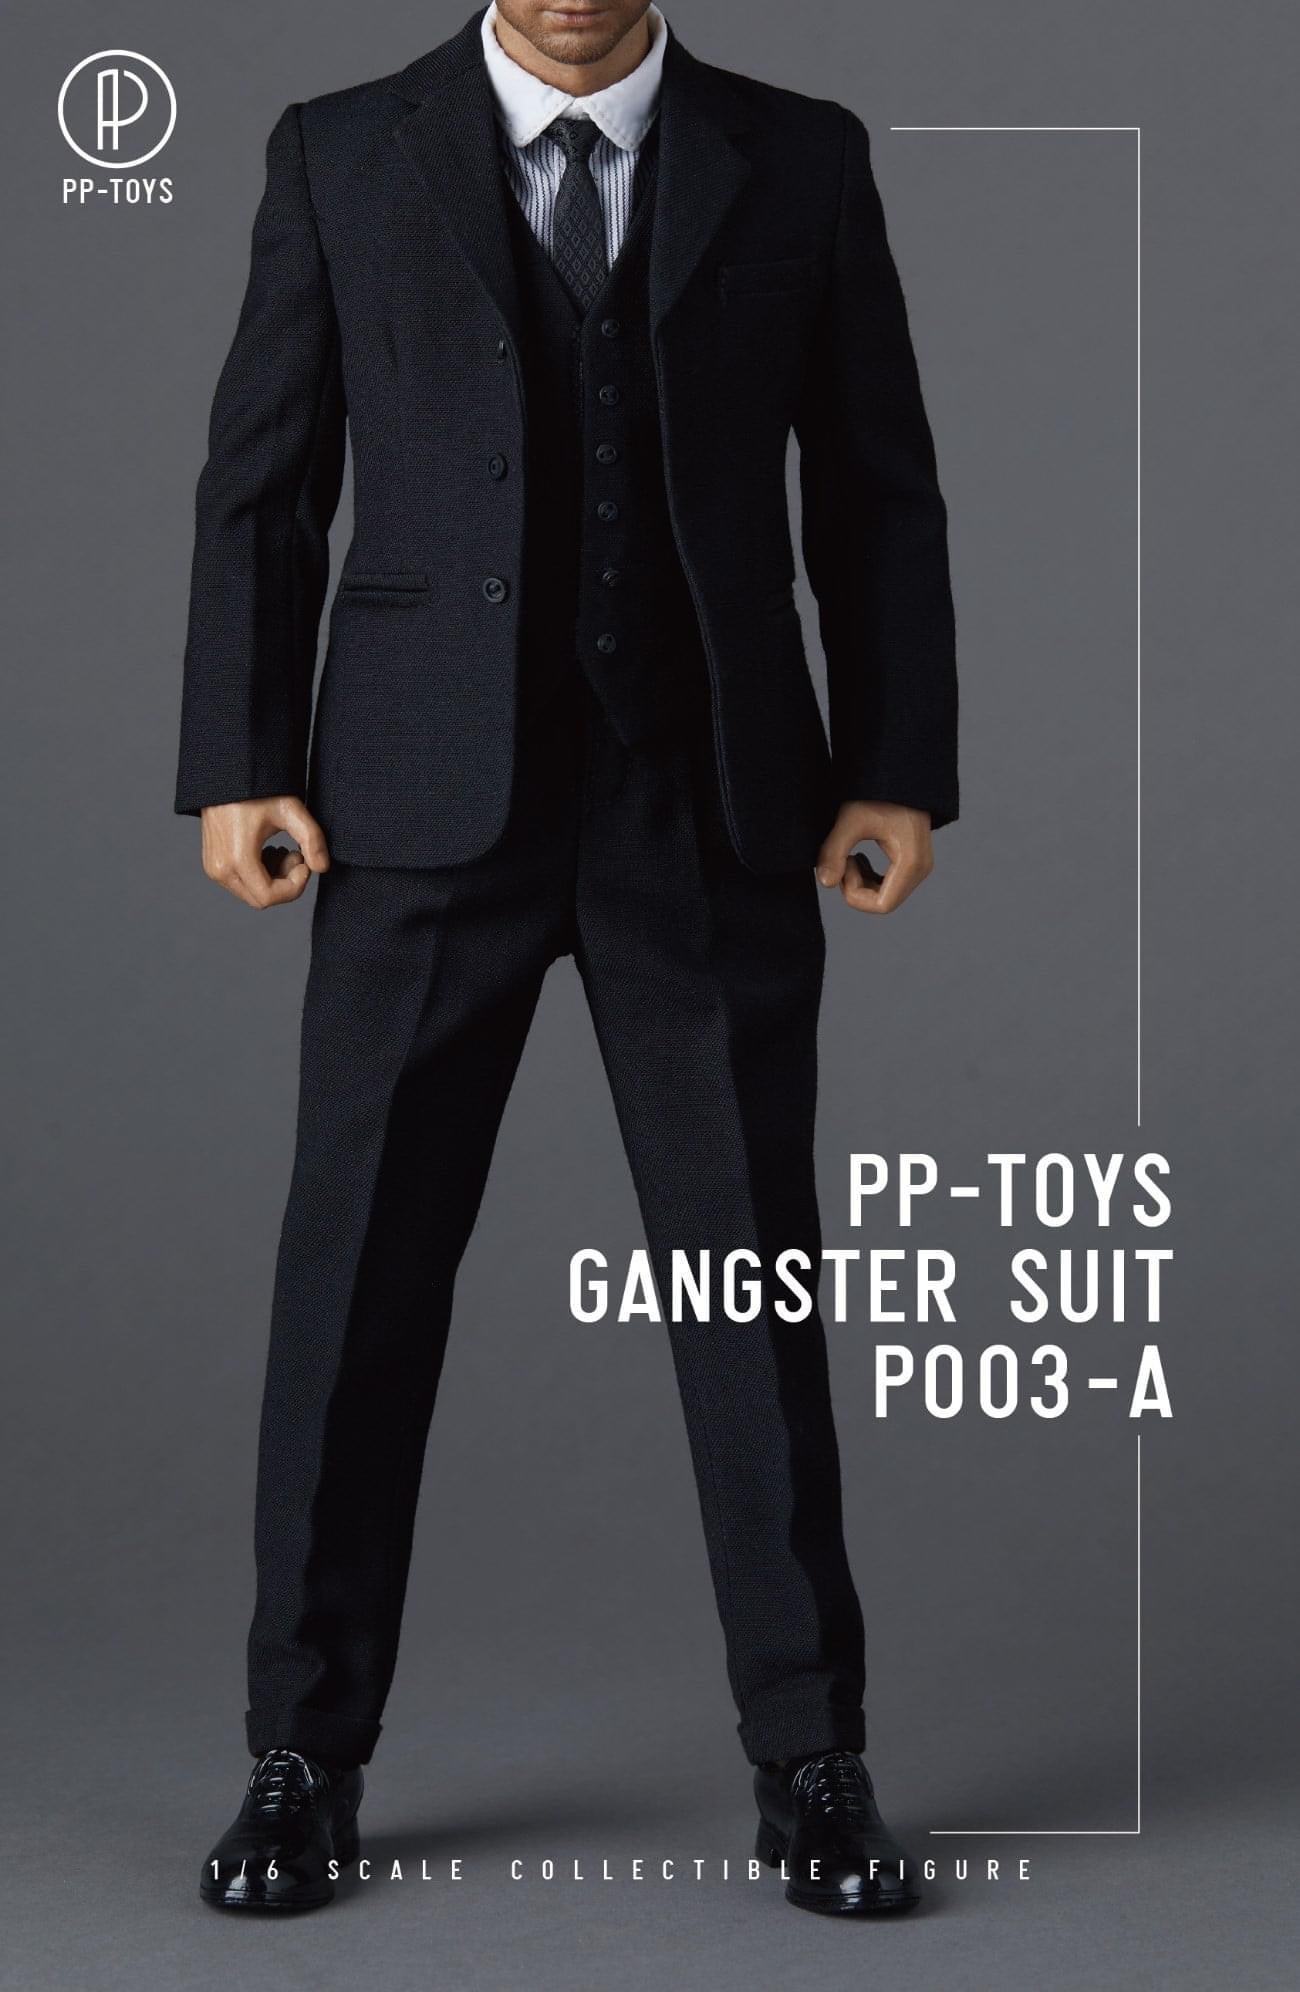 Pedido Traje completo de Gangster 1.0  (4 versiones) marca PPToys escala 1/6